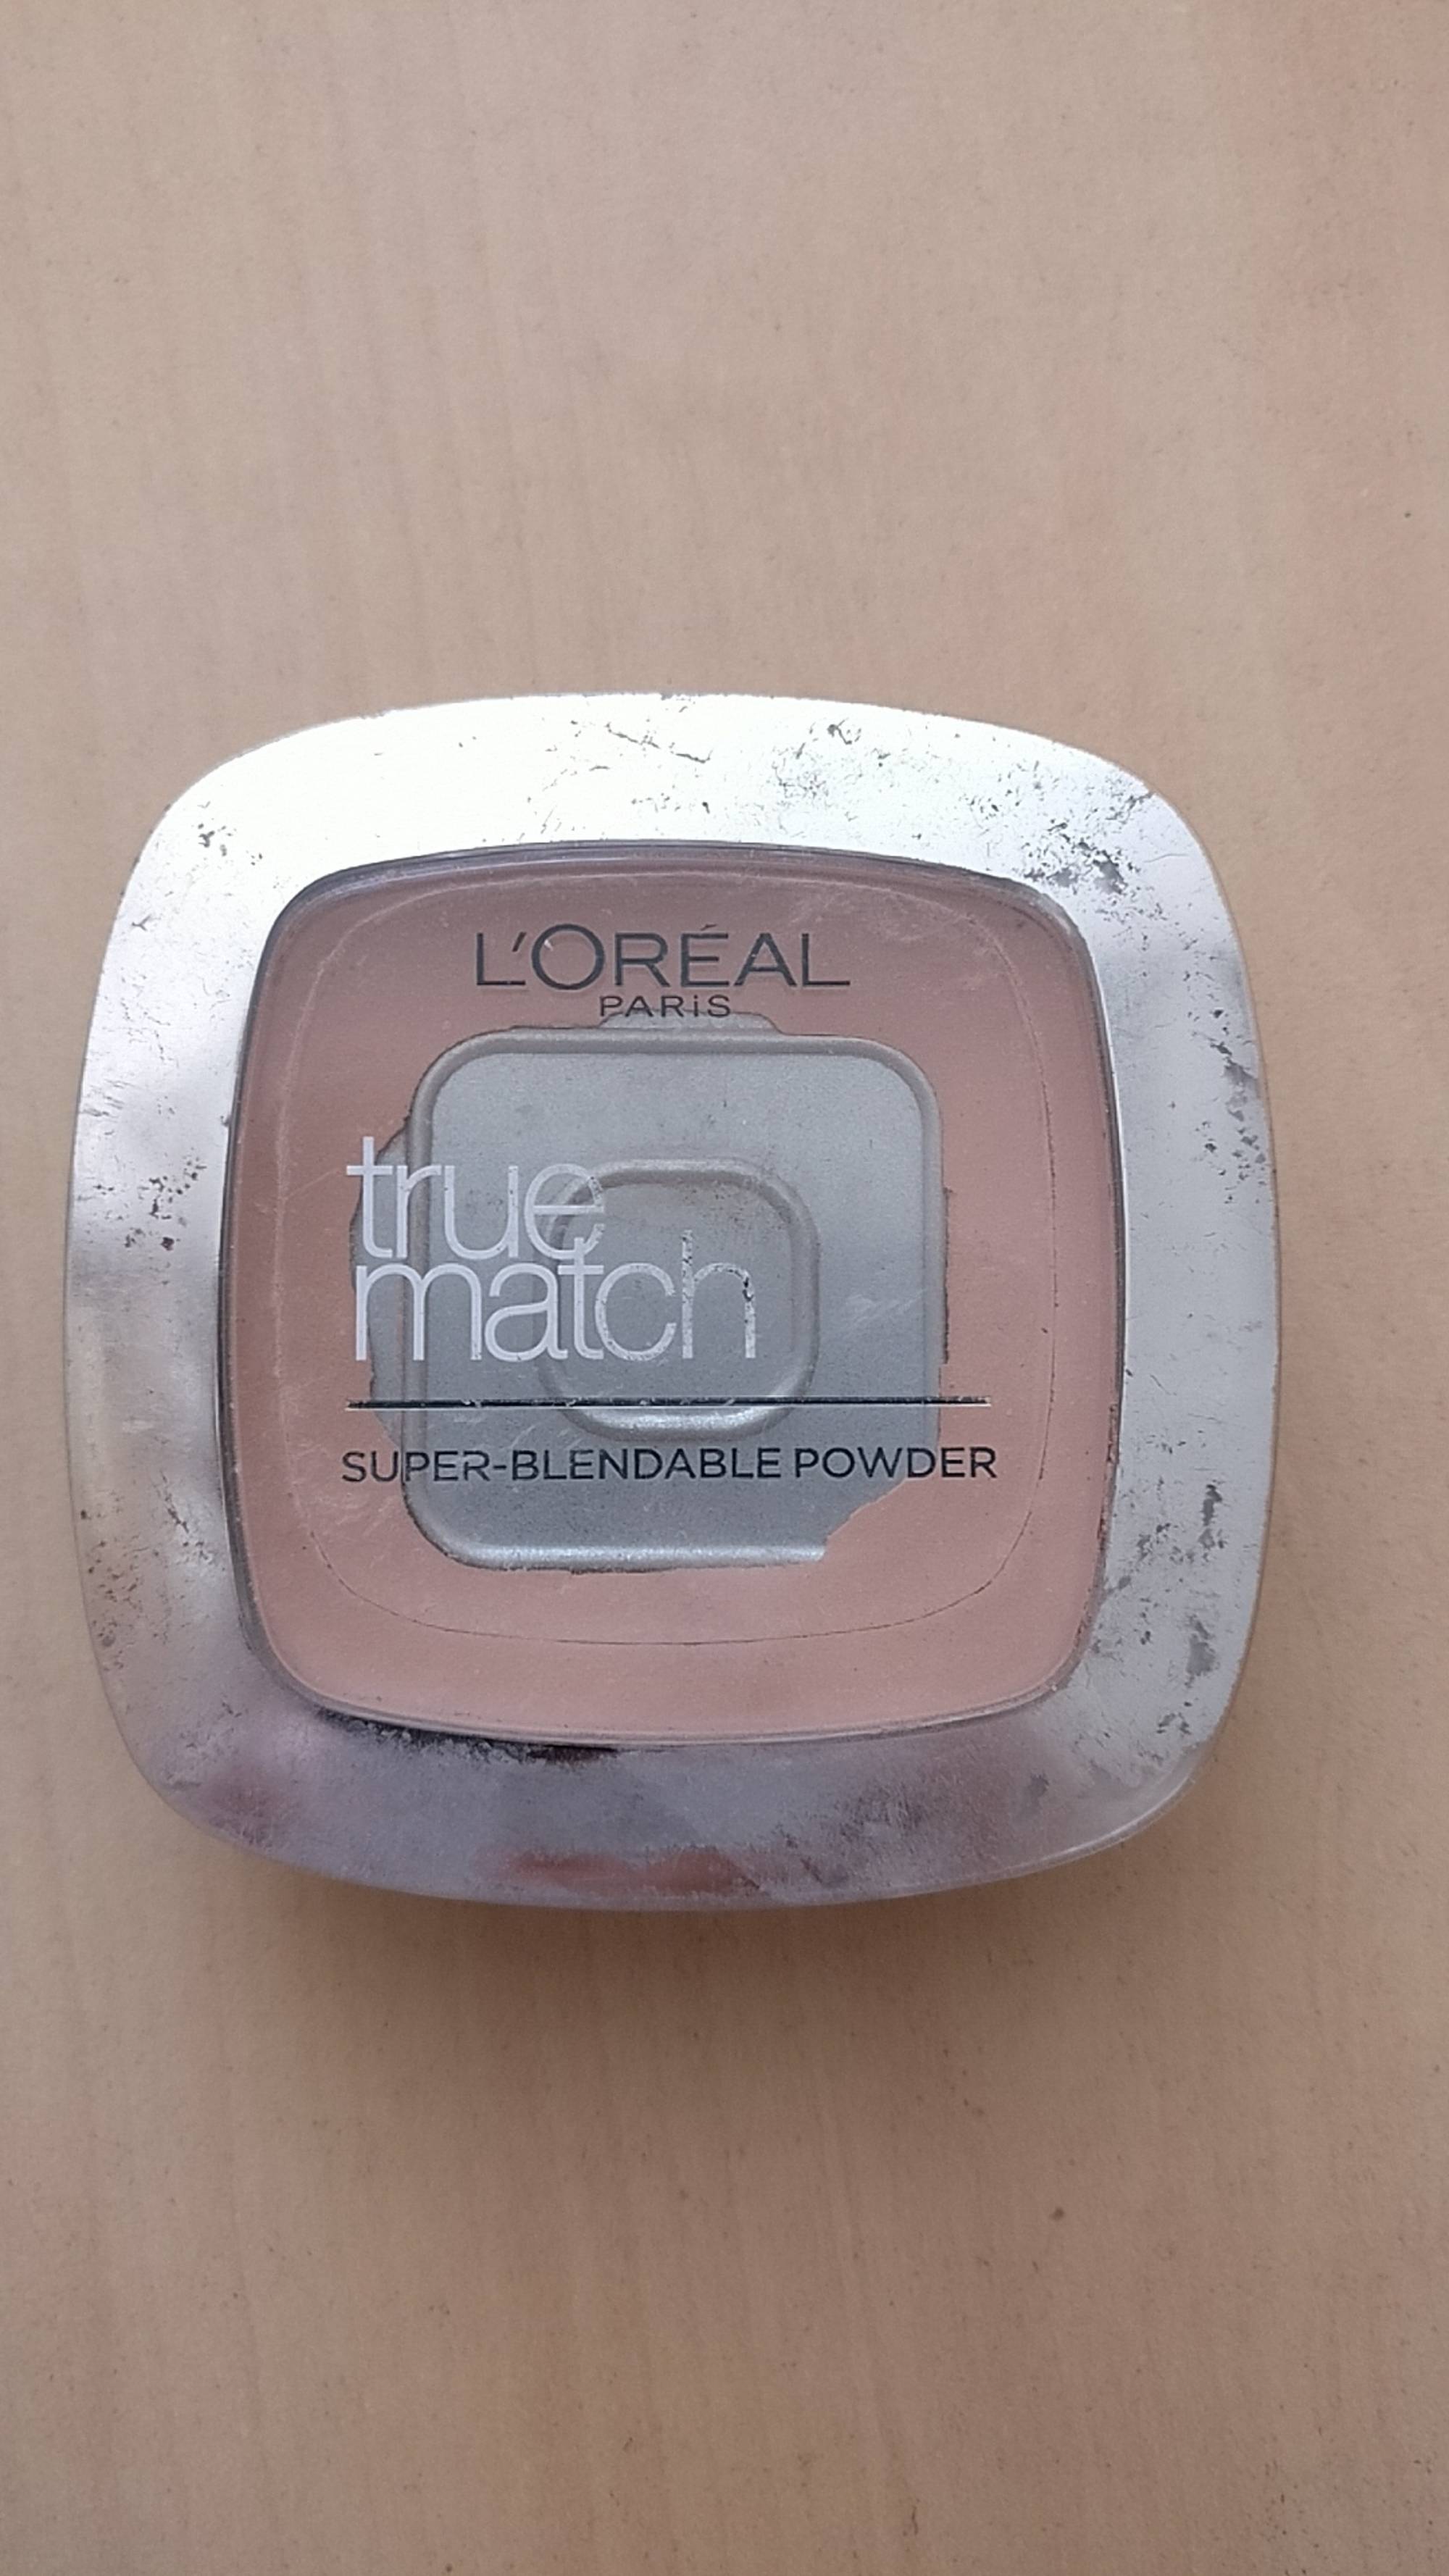 L'ORÉAL - True match - Super blendable powder